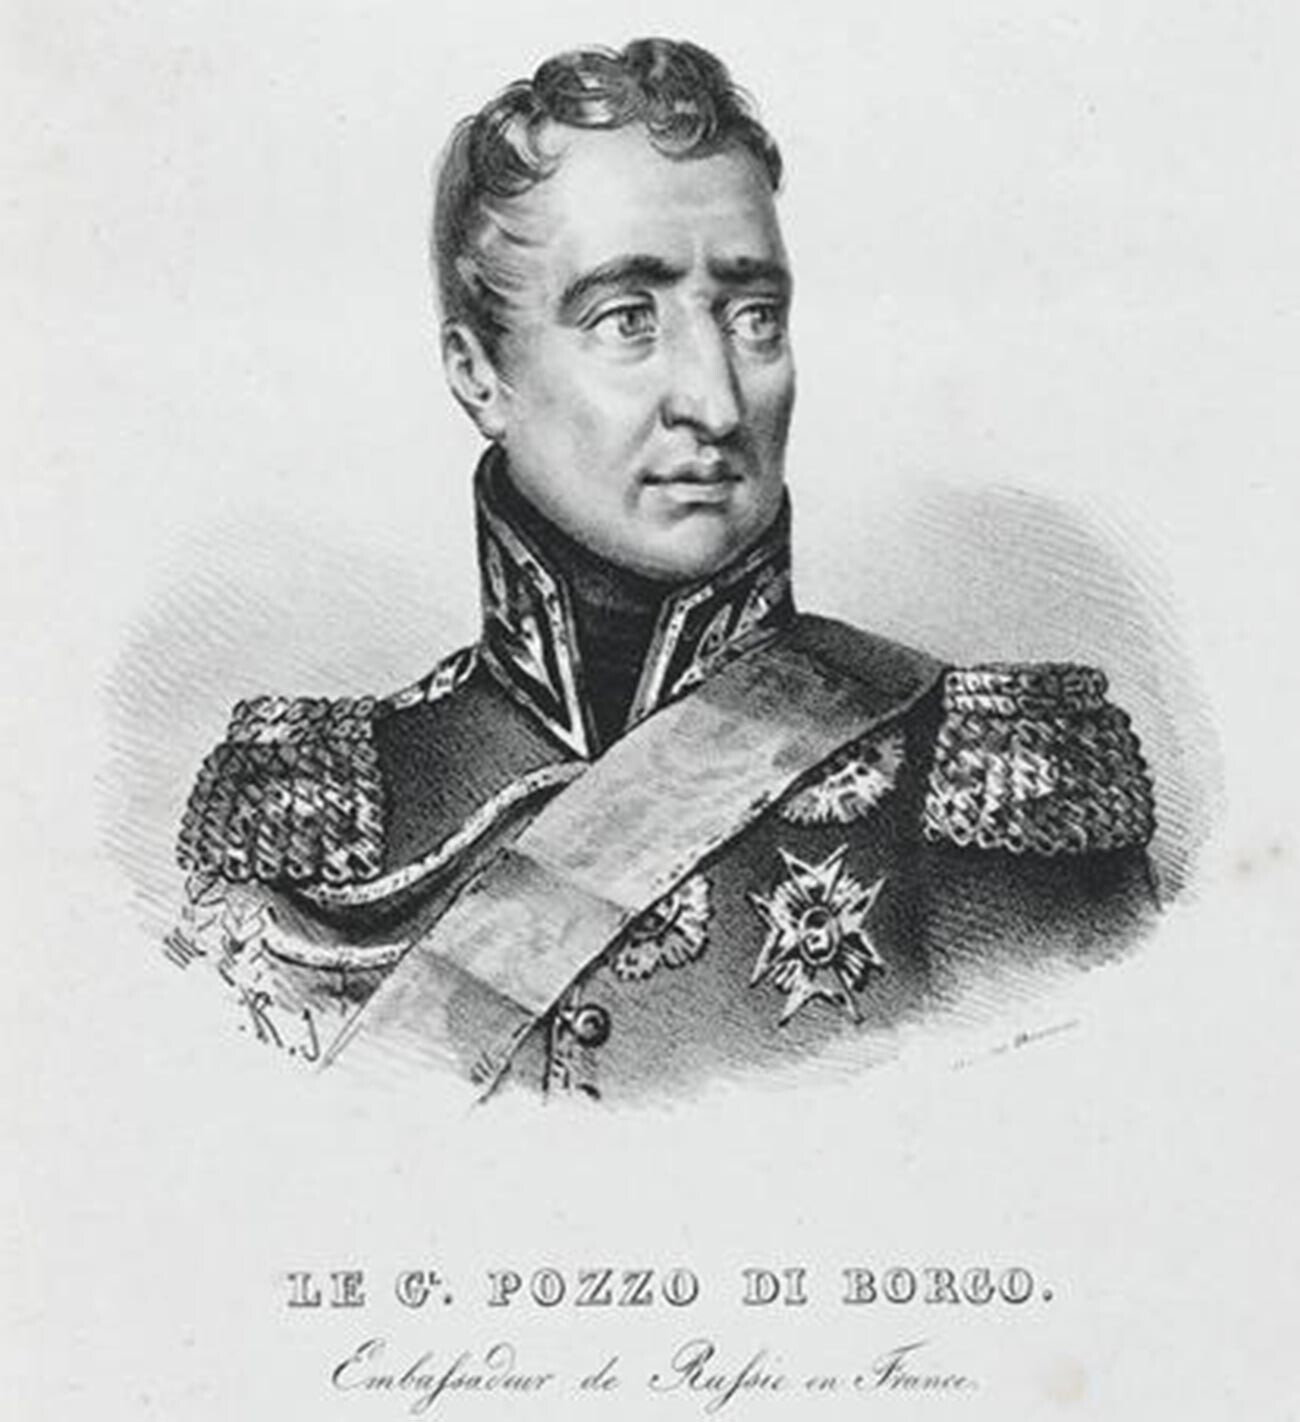 Carlo Andrea Pozzo di Borgo